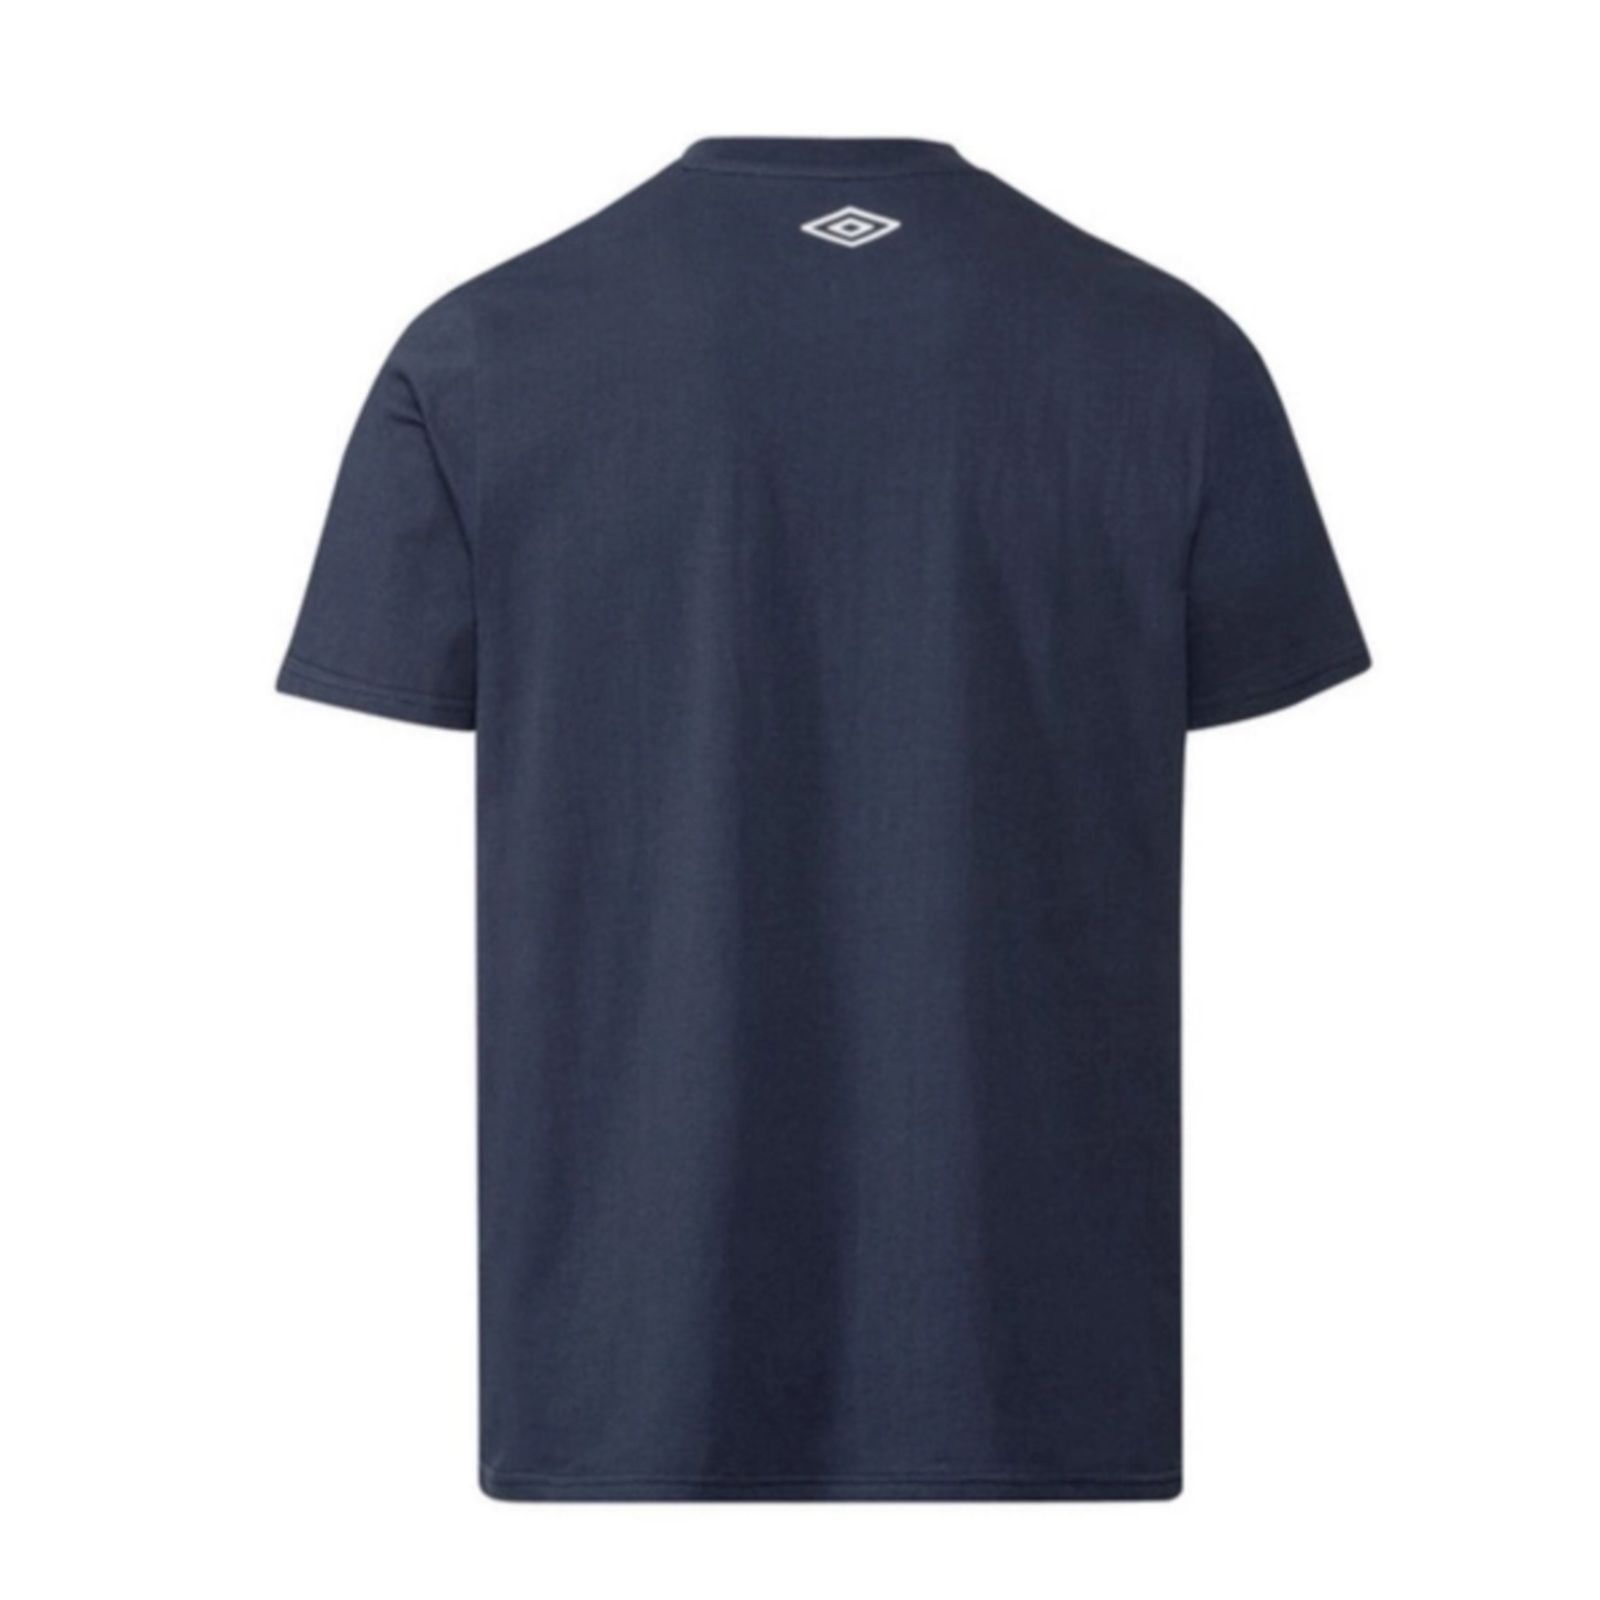 تی شرت آستین کوتاه مردانه آمبرو مدل Navy -  - 2